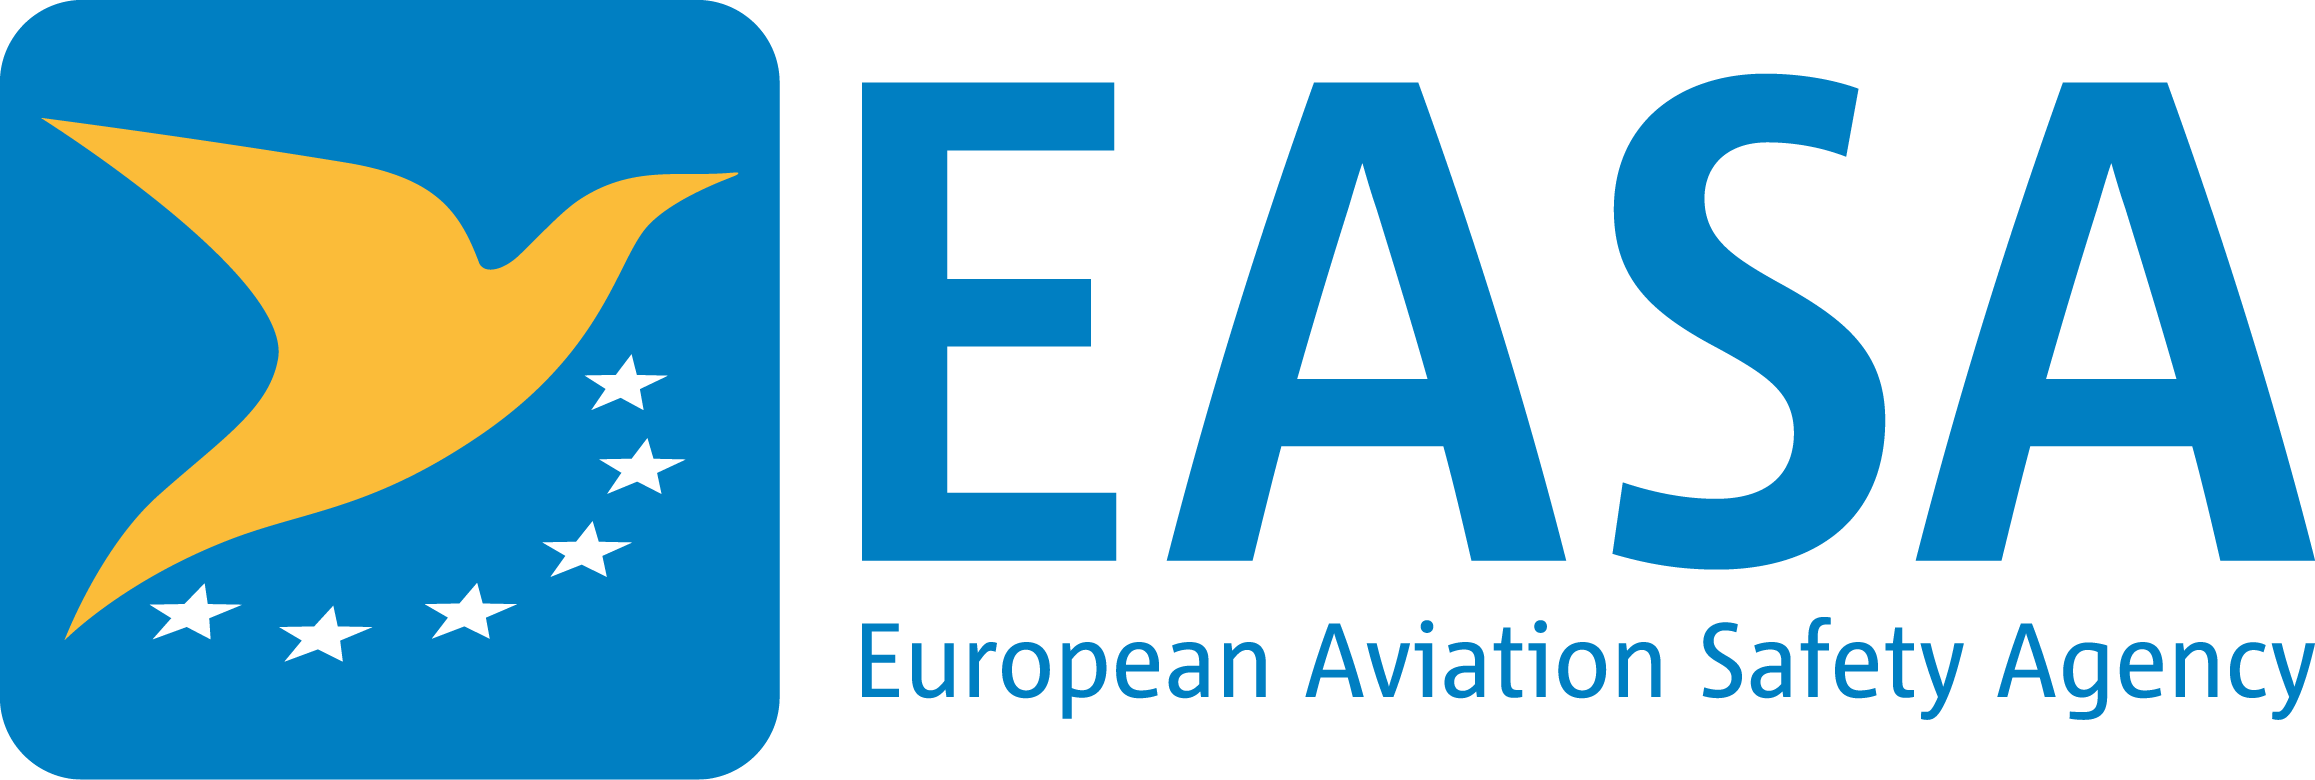 EASE-logo.jpg